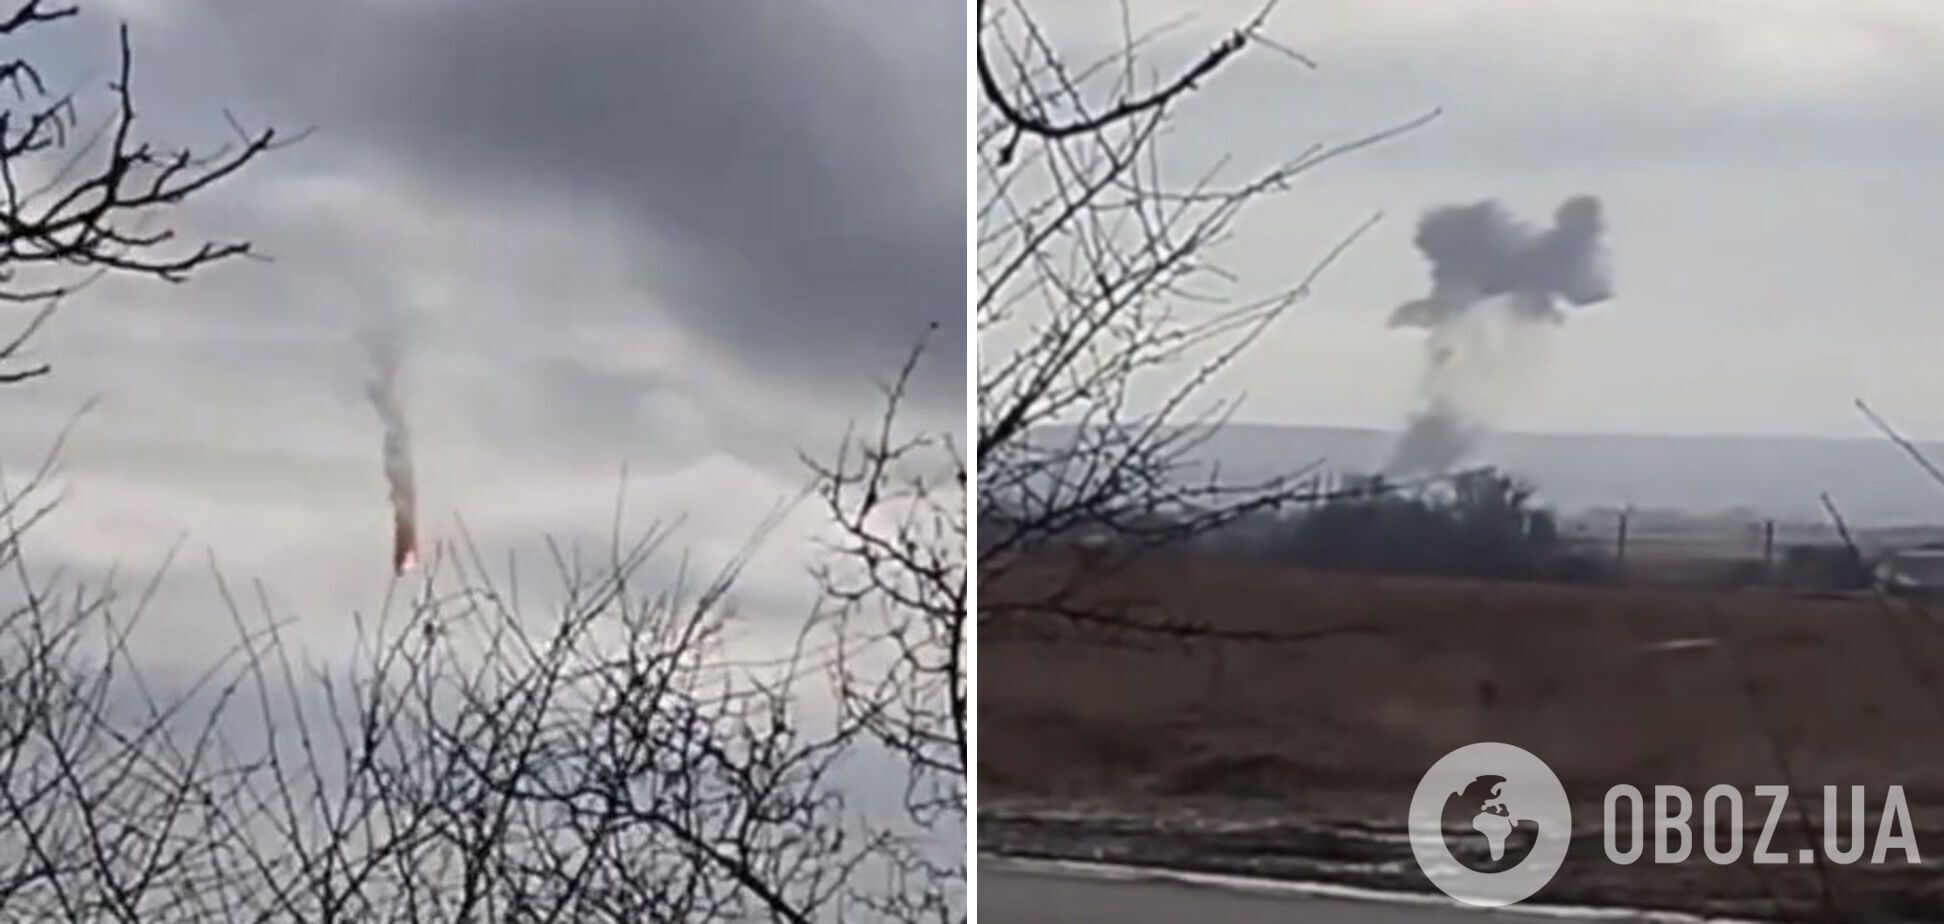 Пілот російського винищувача, який підбили ЗСУ, спрямував літак на українське село. Відео